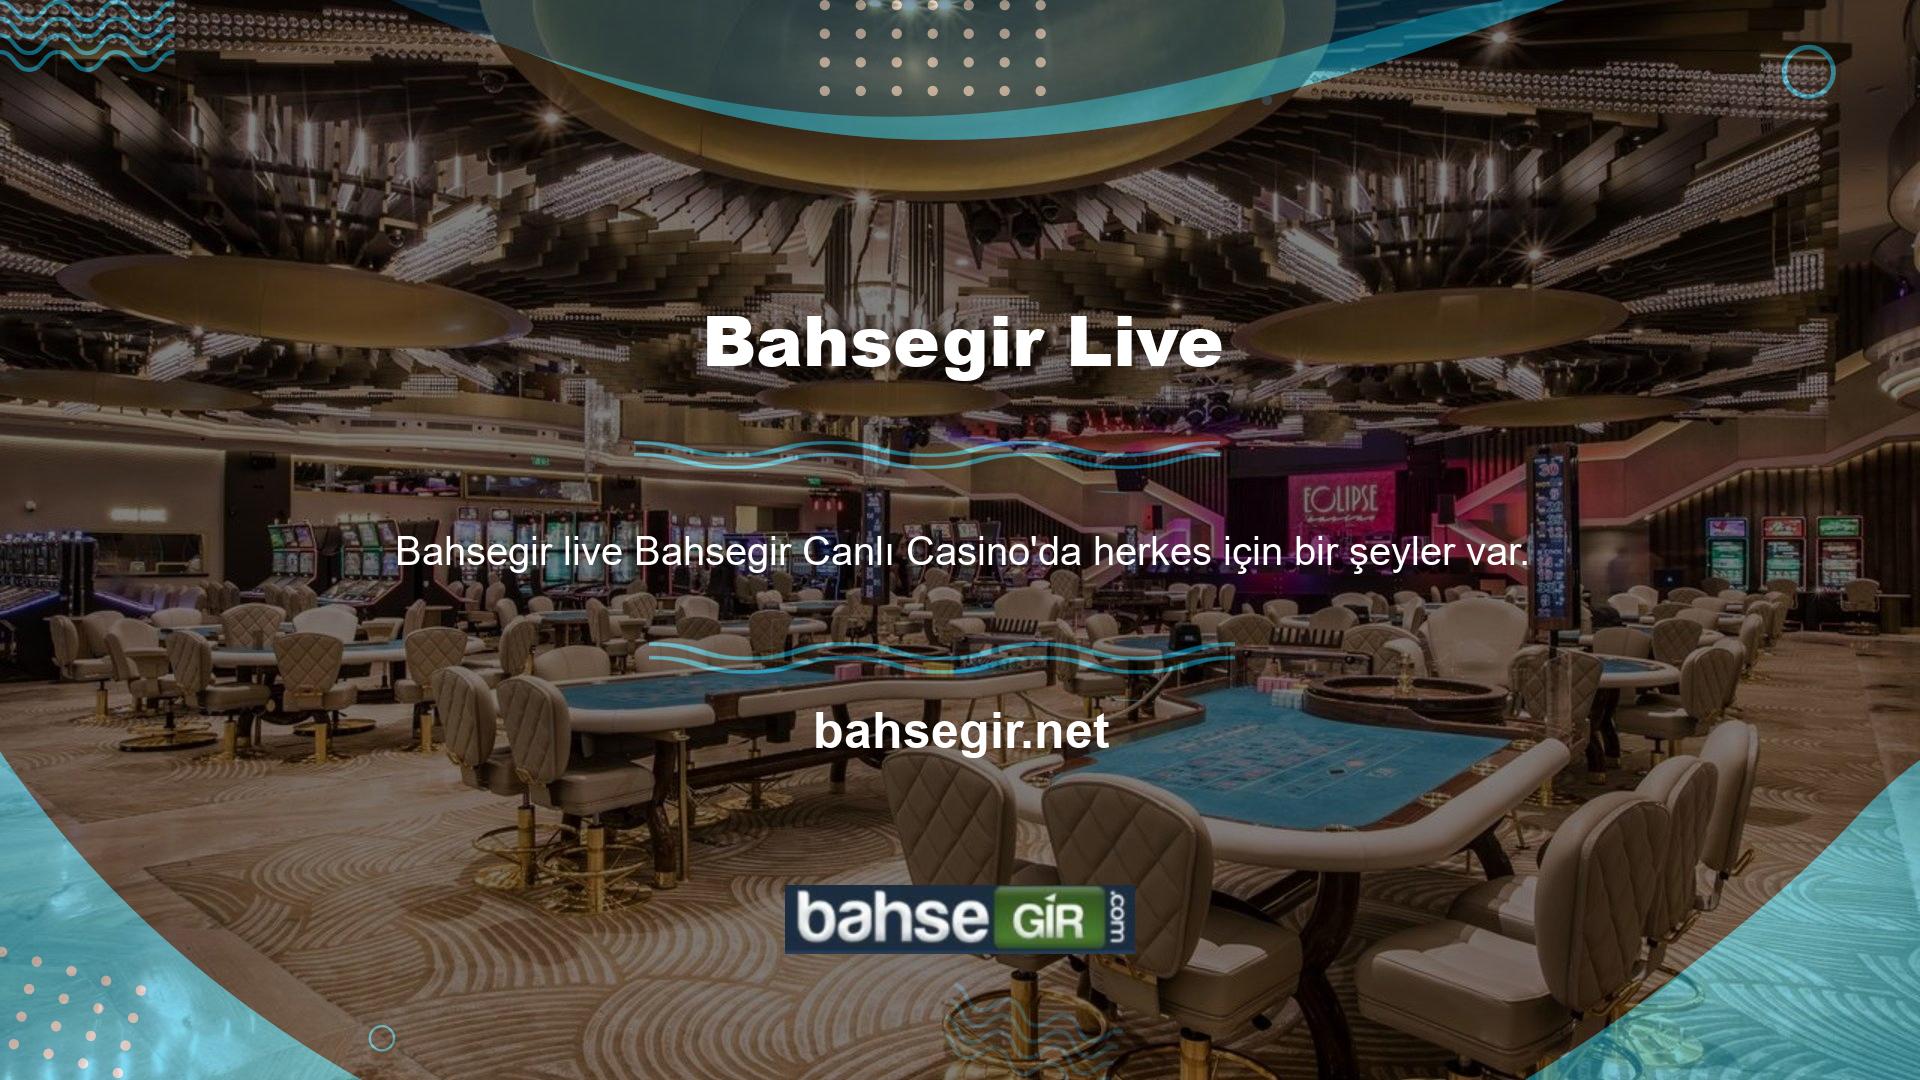 Bahsegir Canlı Casino'nun Slotlar bölümü düzenli olarak güncellenmekte ve sıklıkla yeni oyunlar eklenmektedir